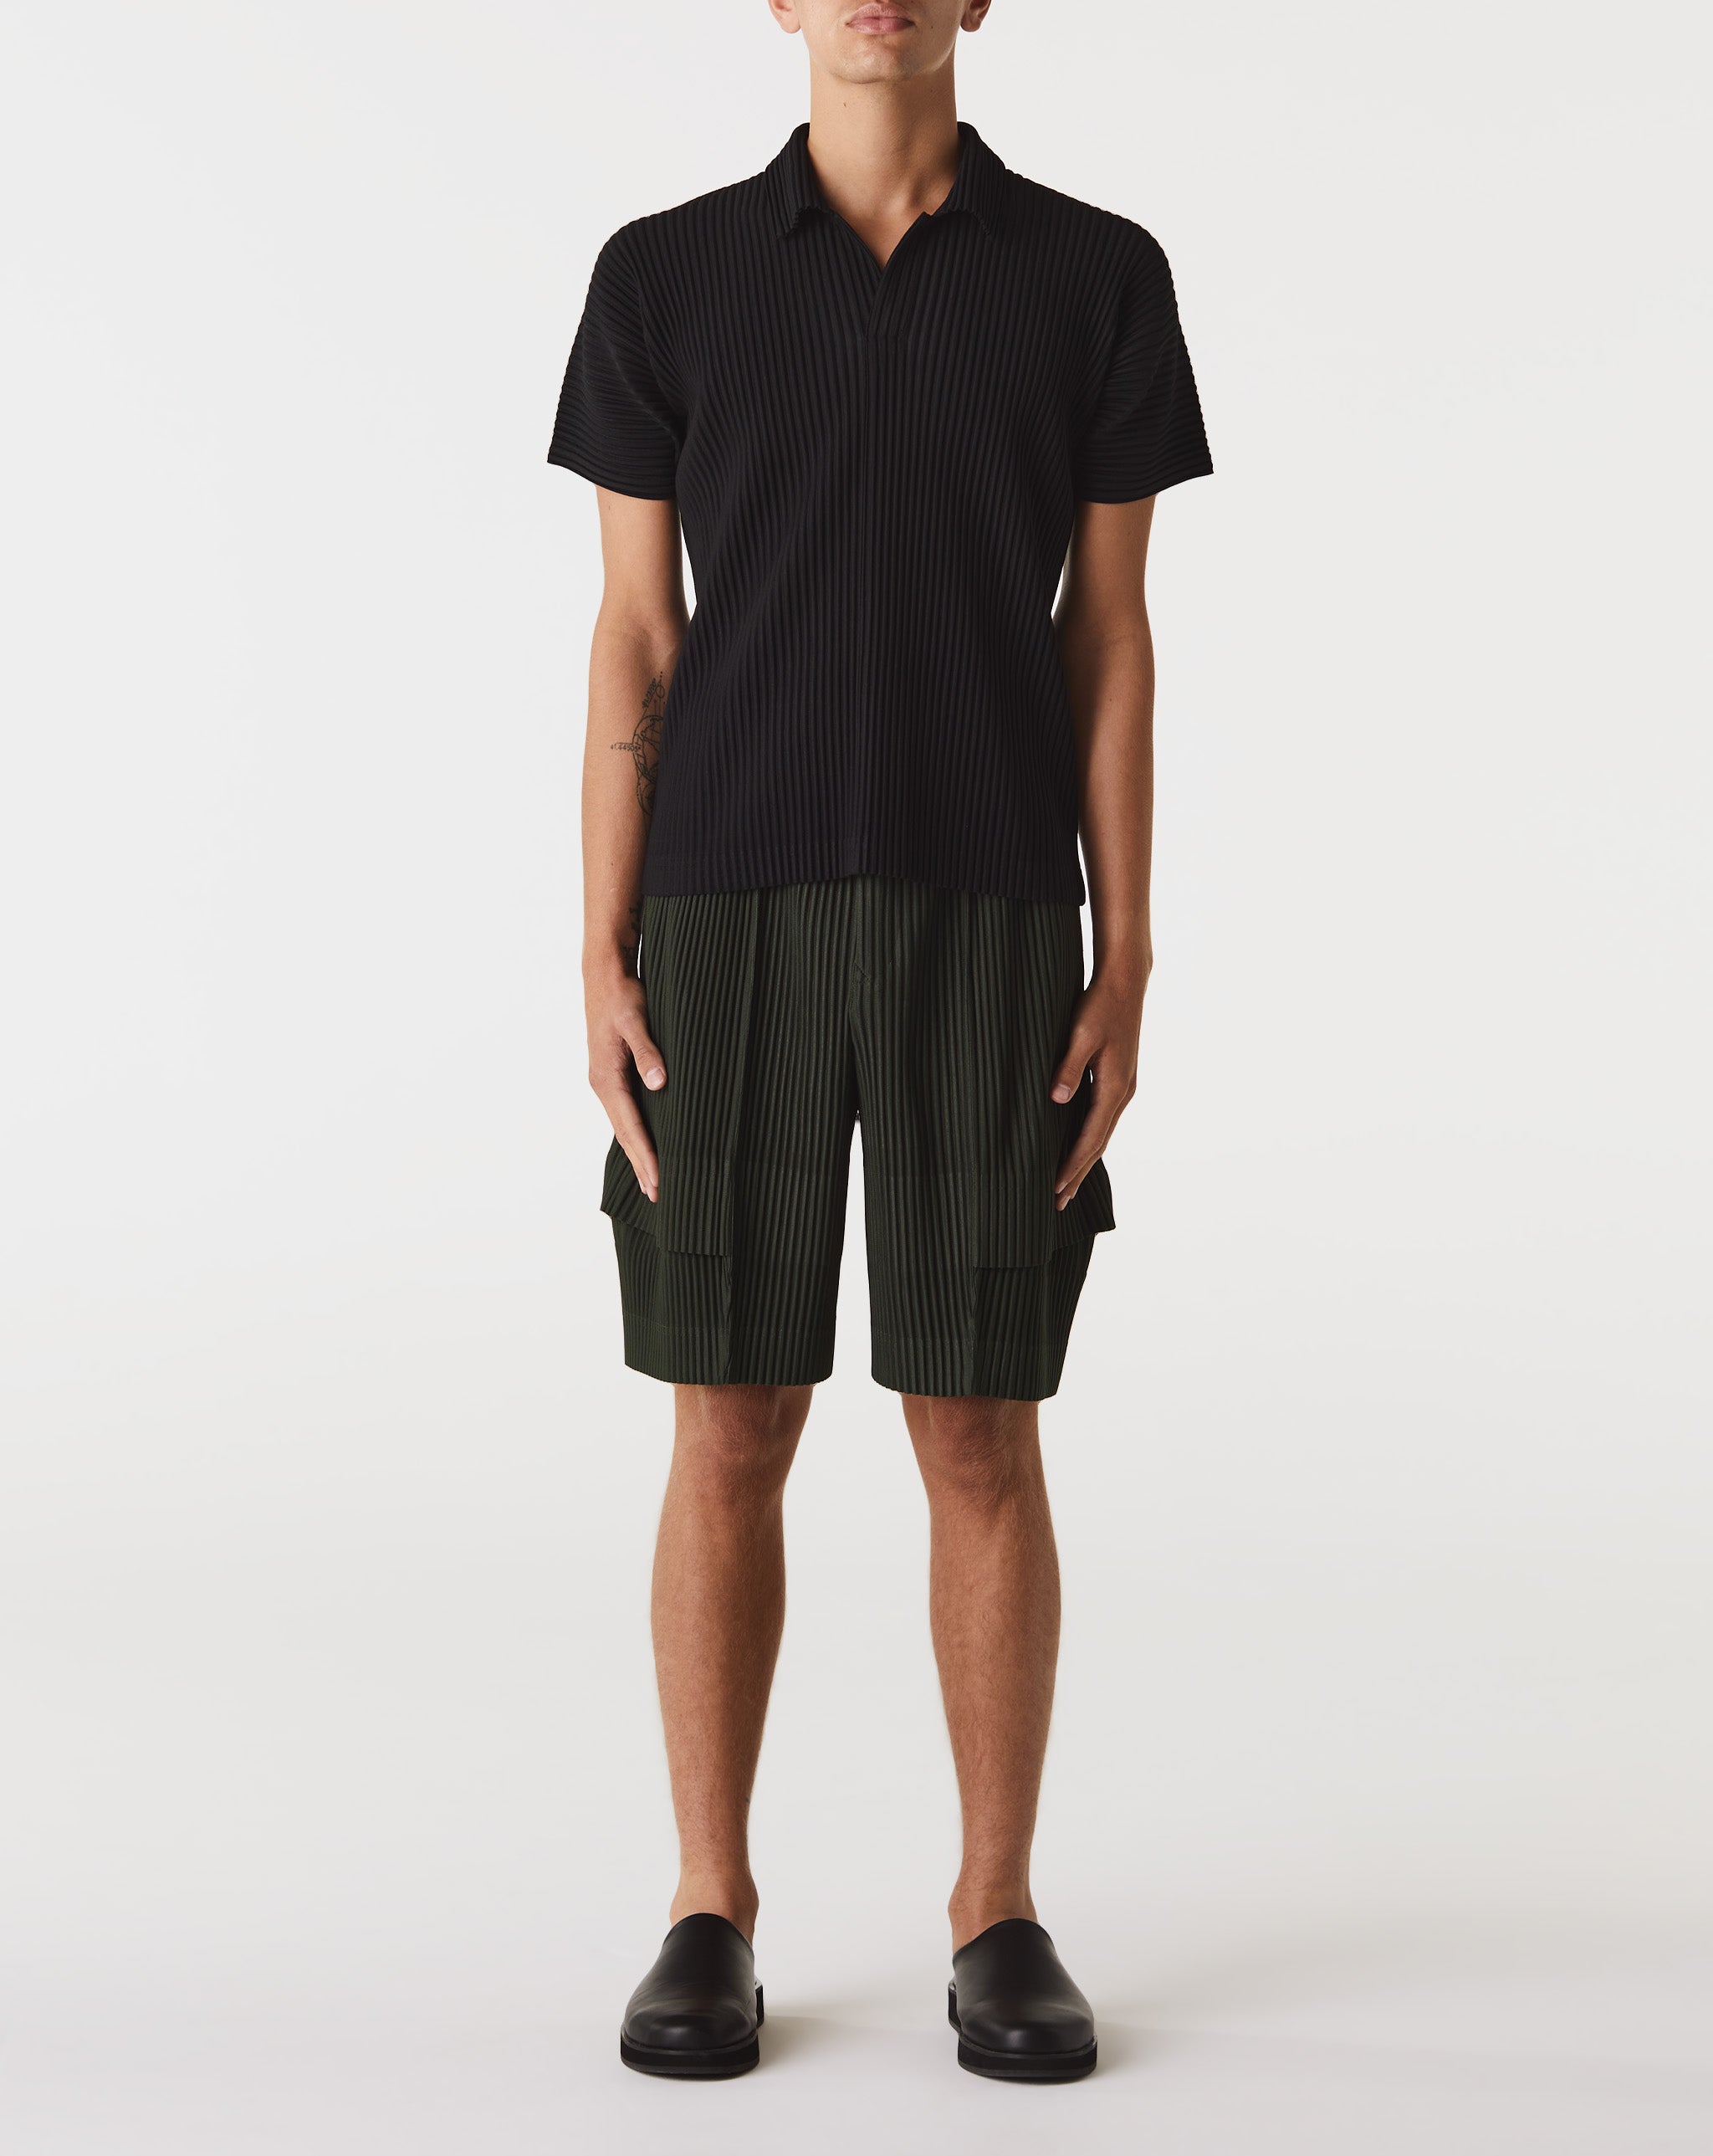 Harness Heavyweight T-Shirt Cargo Shorts  - Cheap Urlfreeze Jordan outlet